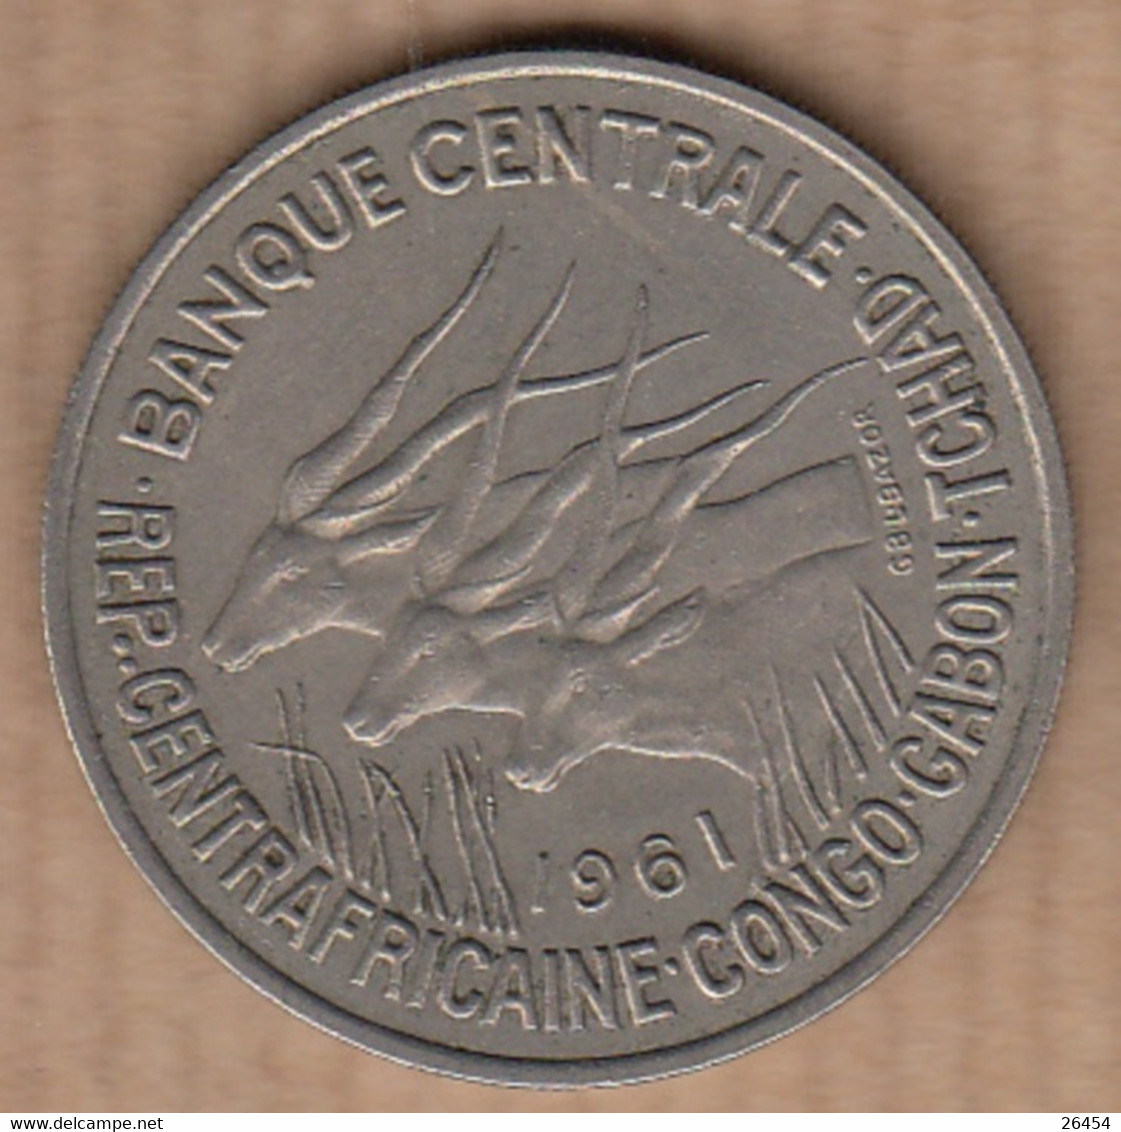 BANQUE CENTRALE CENTRAFRICAINE-CONGO-GABON       Pièce De Monnaie  De 50F   Année 1961 - Unclassified